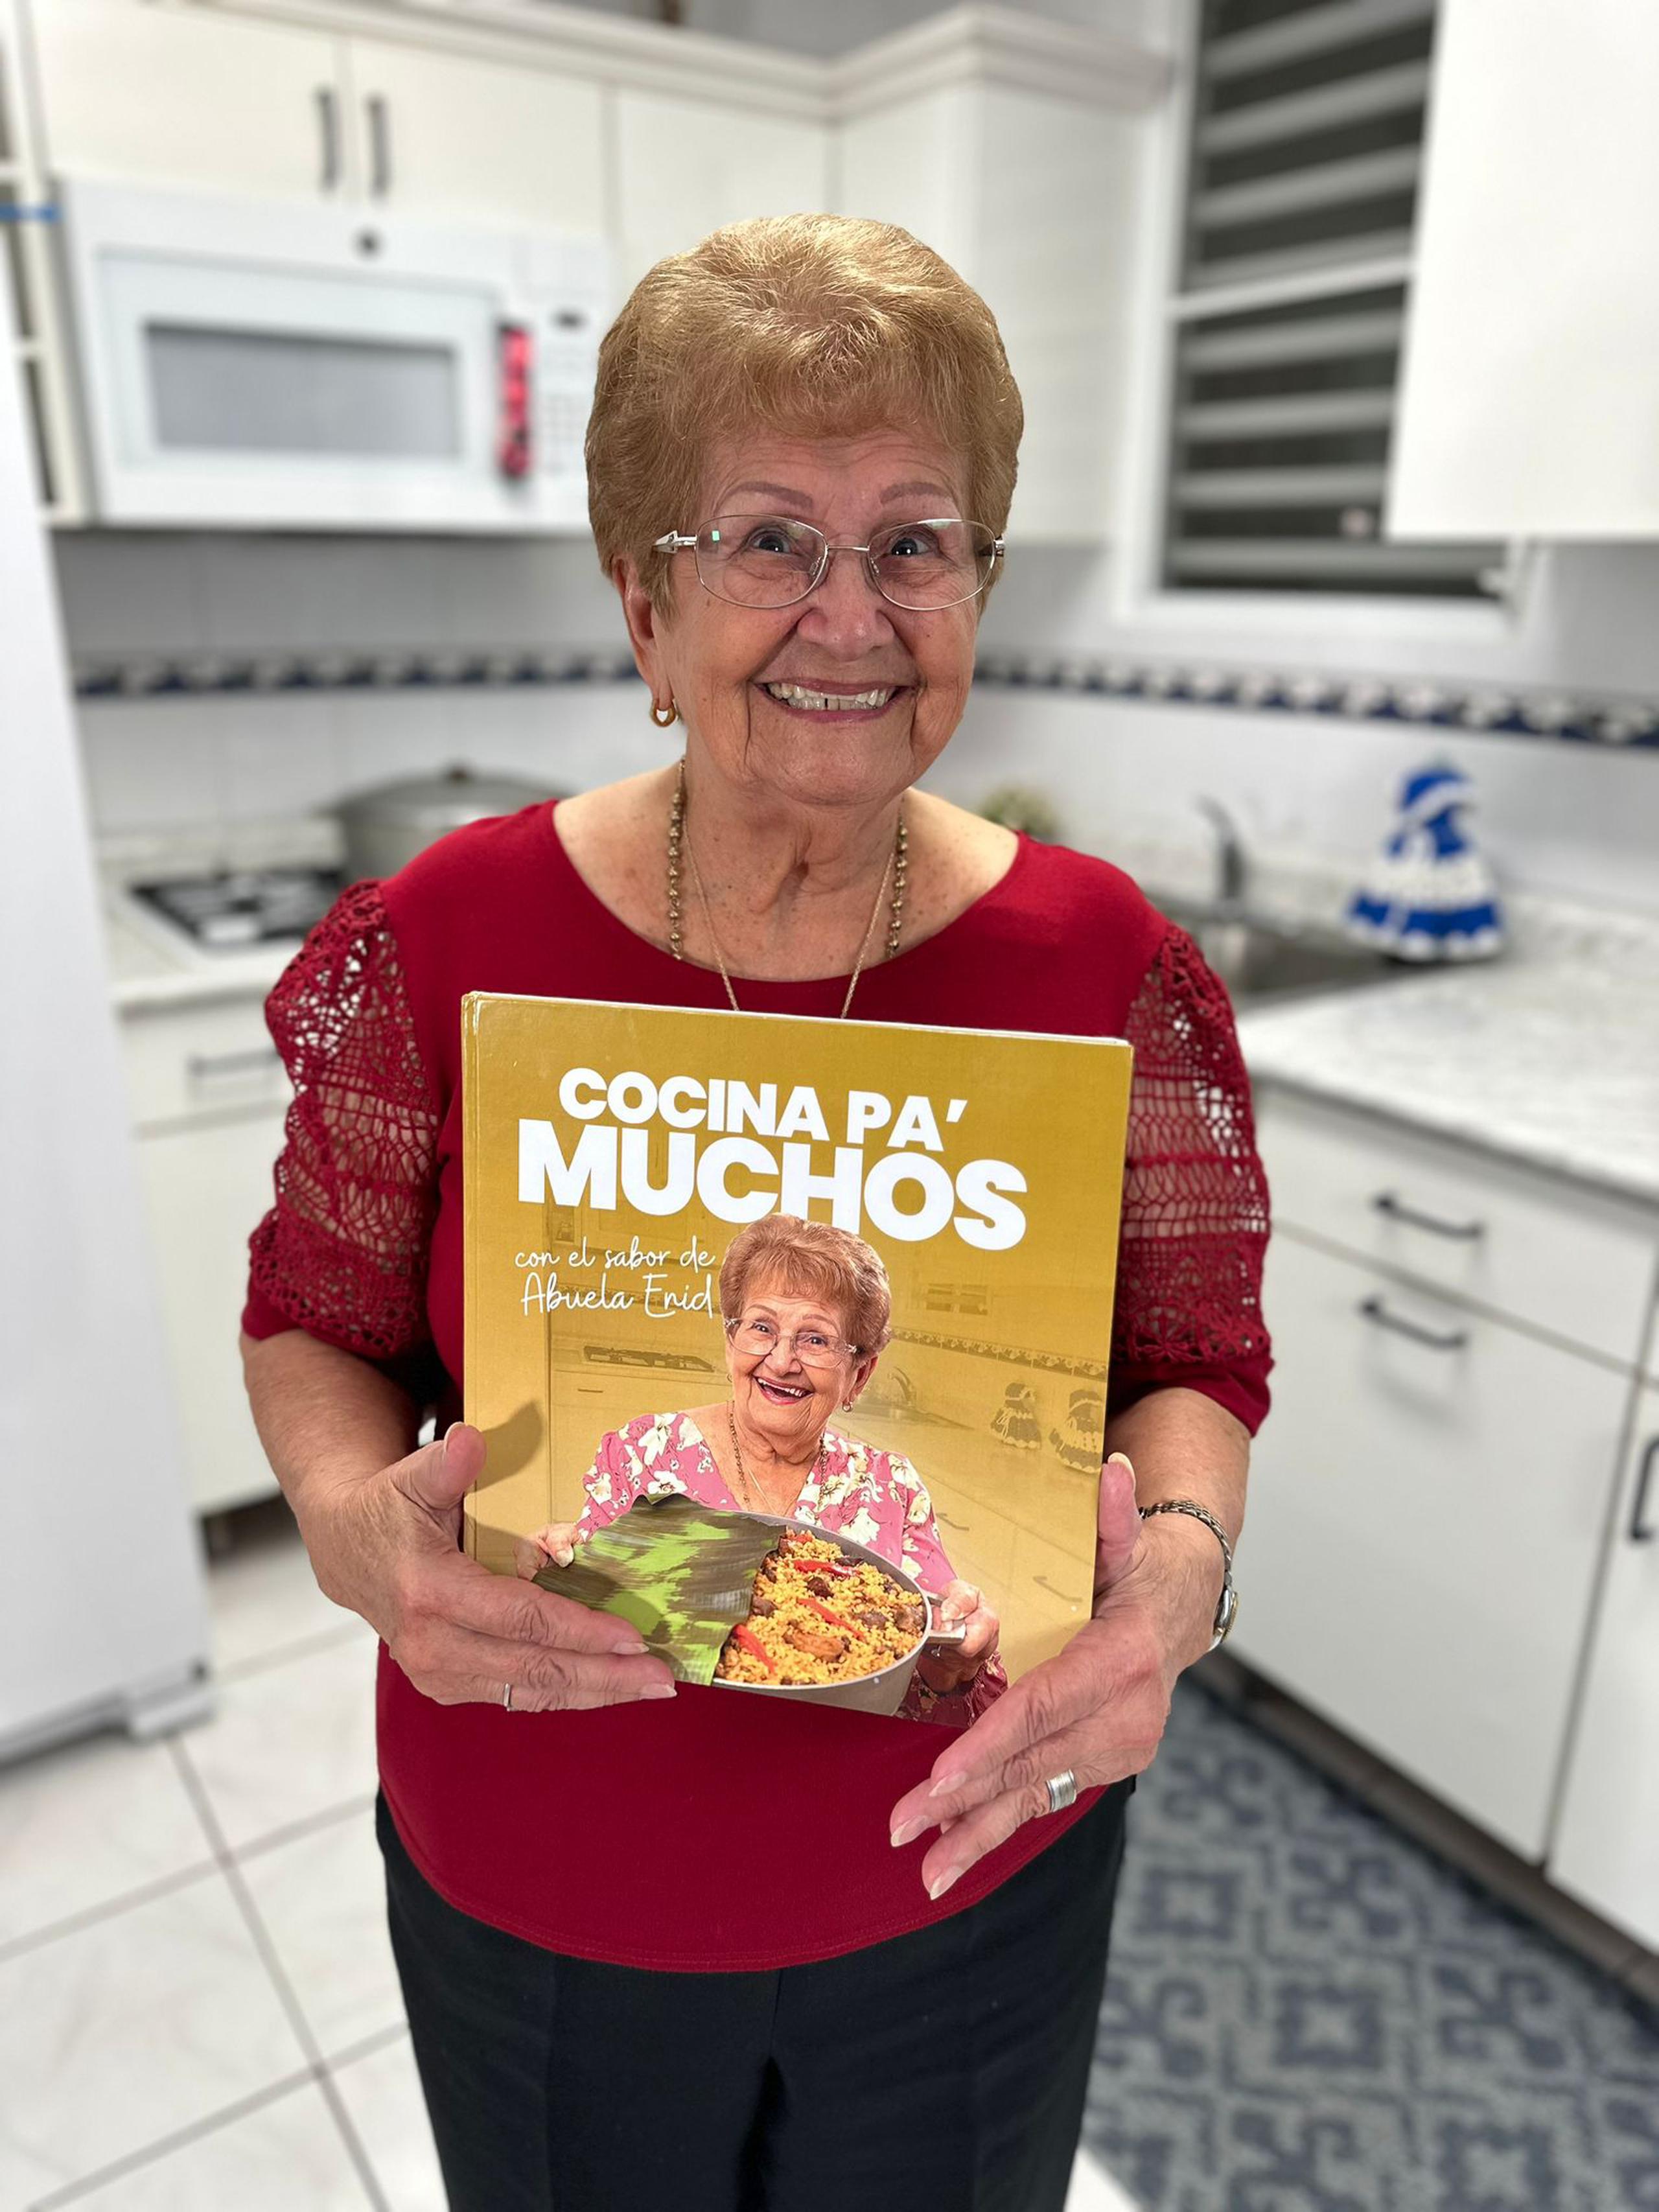 El libro de recetas la tiene entusiasmada de poder compartir sus recetas de un modo más formal.